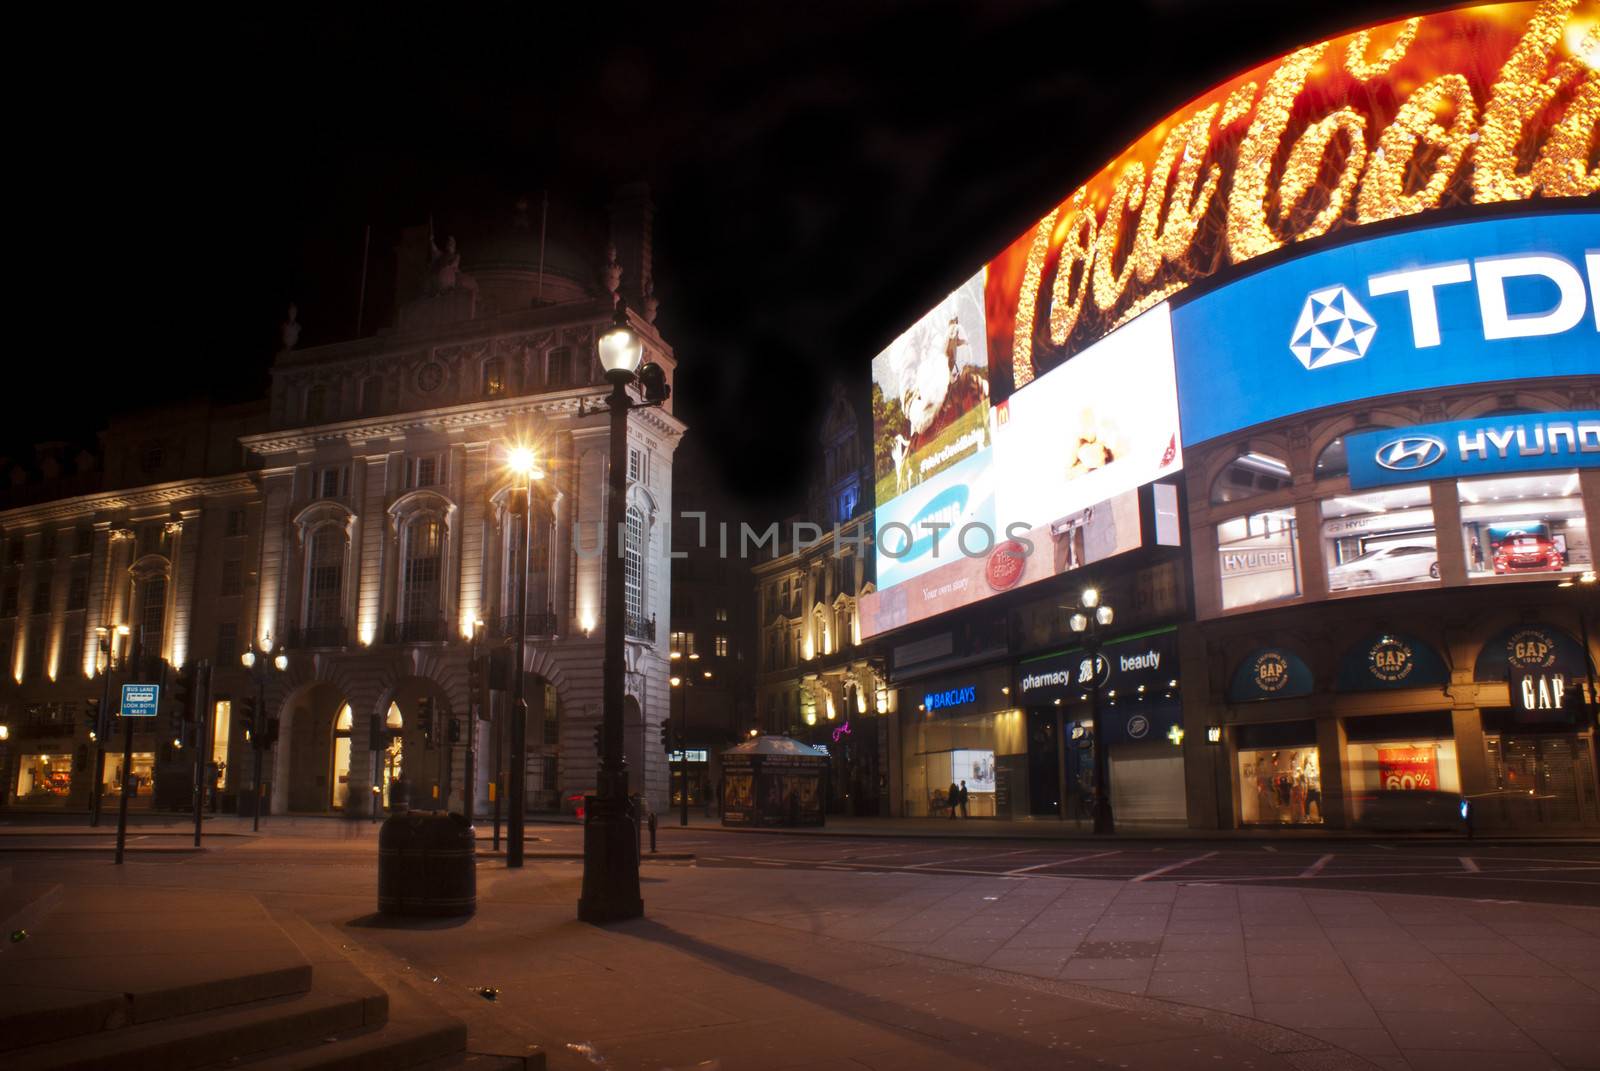 piccadilly circus by night, London by gandolfocannatella